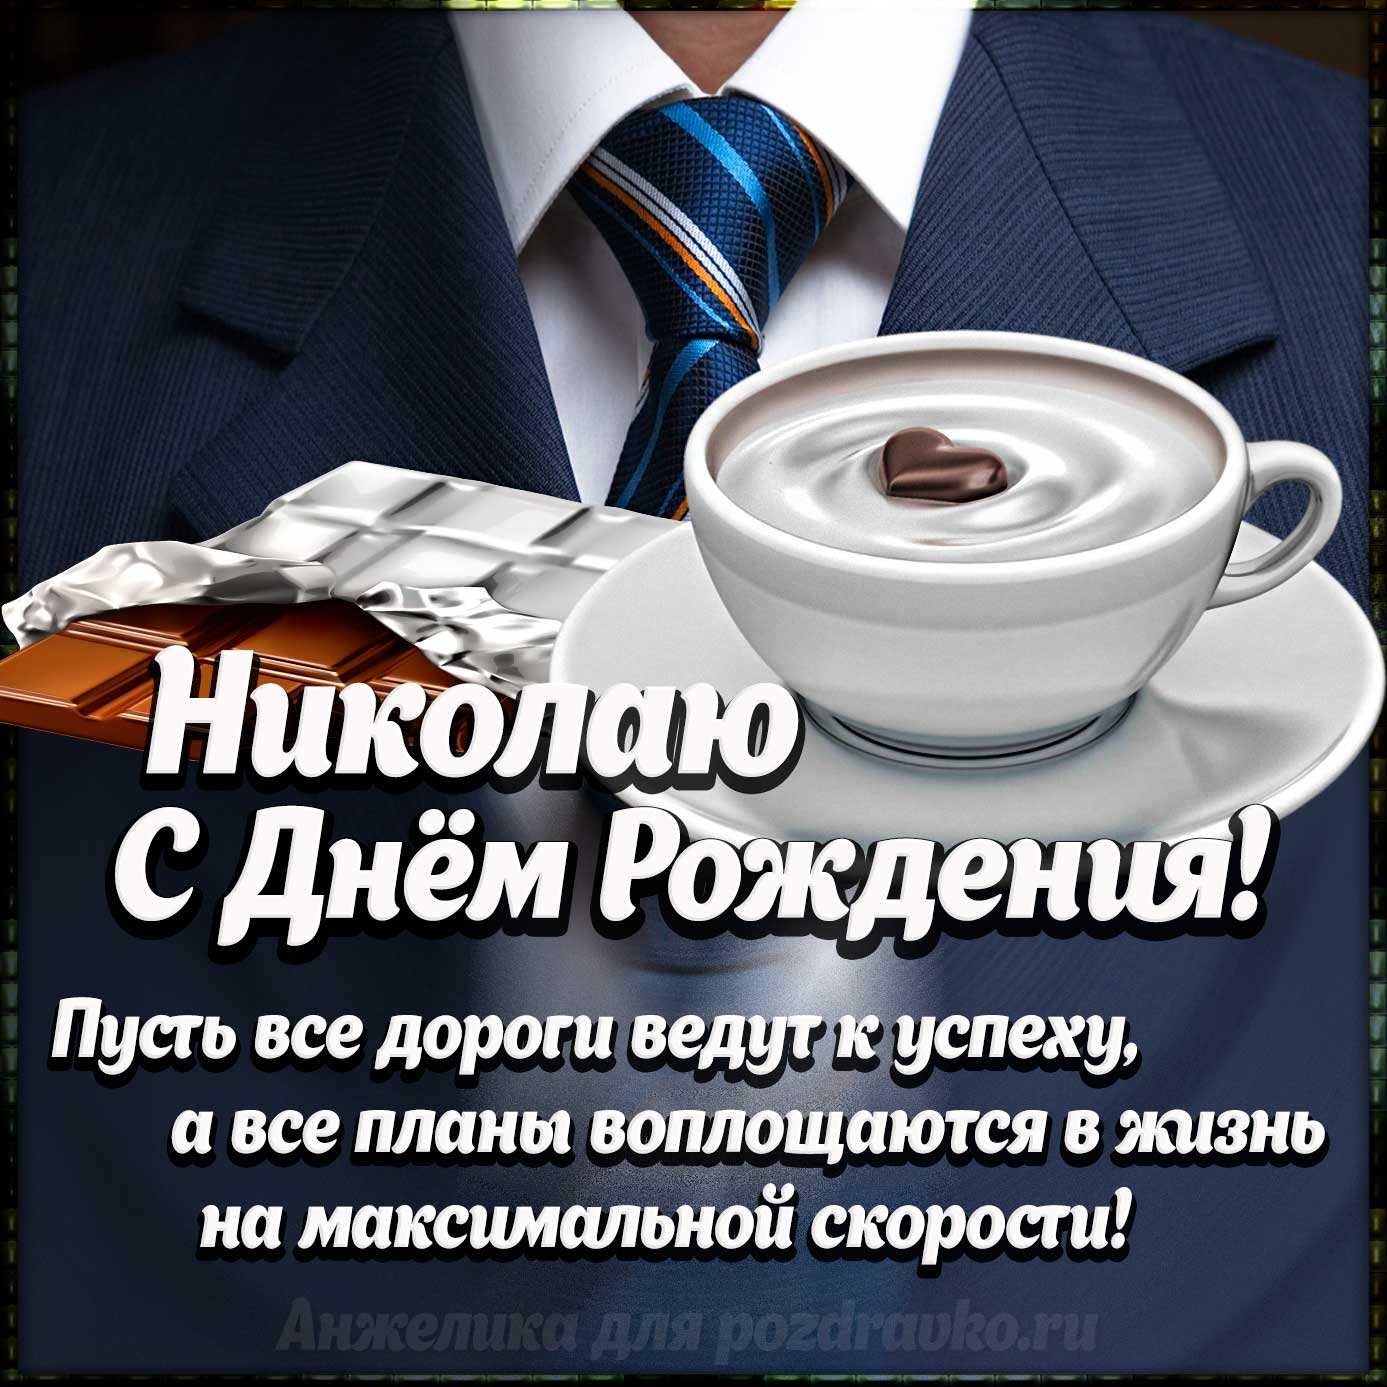 Открытка - Николаю с Днем Рождения с галстуком, кофе и пожеланием. Скачать бесплатно или отправить картинку.